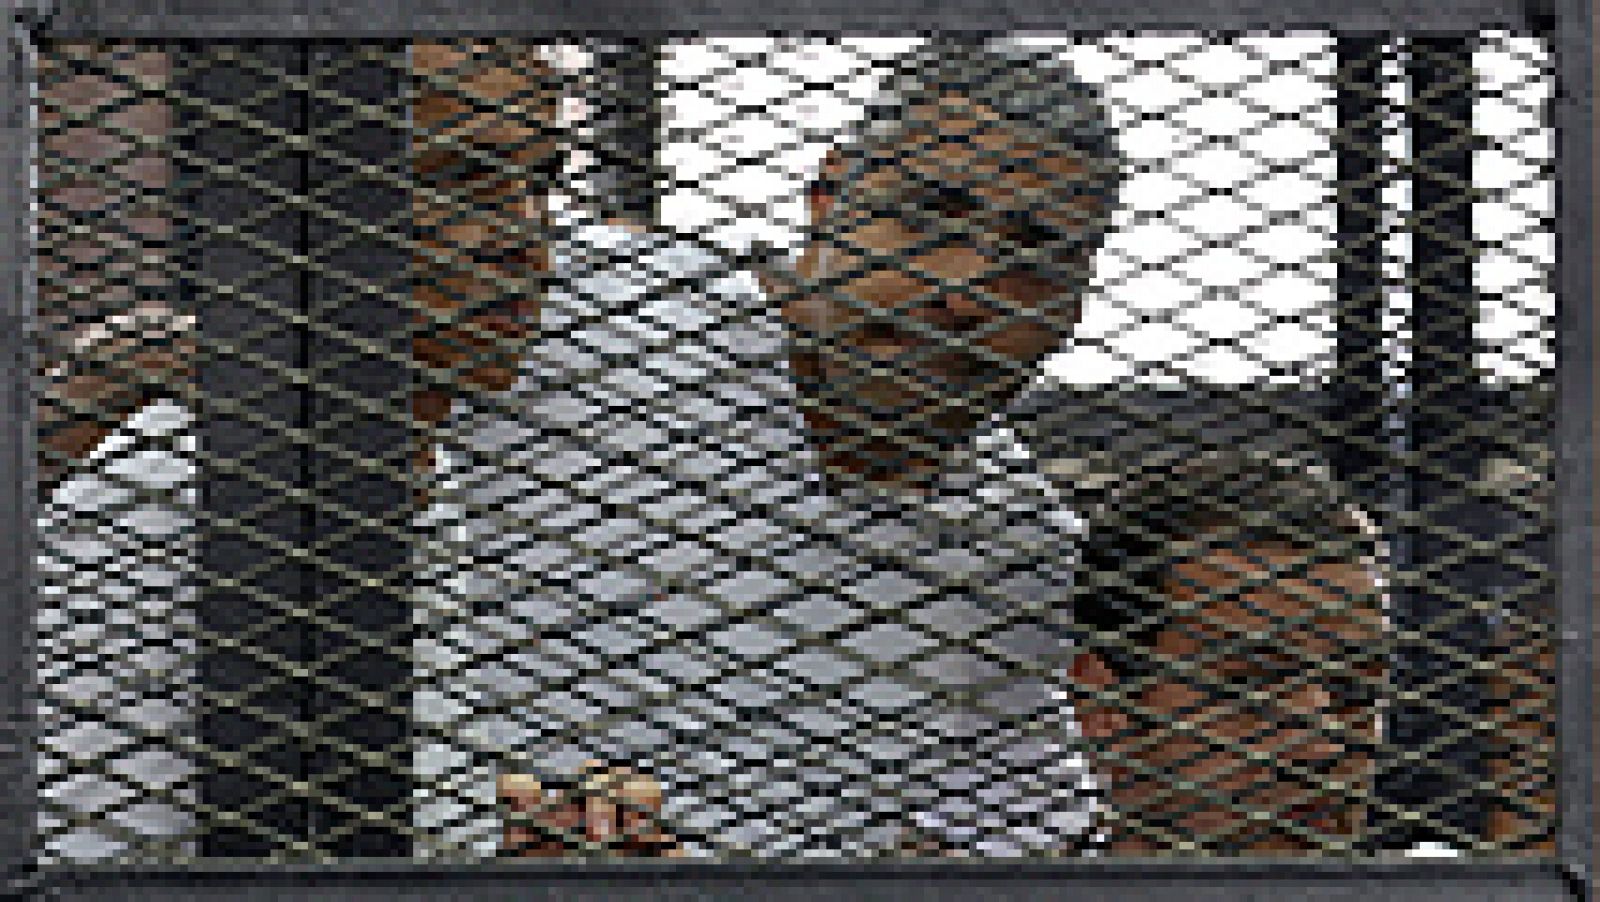  Un tribunal egipcio ha dictado sentencia este lunes y ha condenado a entre siete y diez años de cárcel a tres periodistas del canal catarí Al Yazira en inglés, a los que ha encontrado culpables de difundir noticias falsas sobre Egipto y colaborar con los Hermanos Musulmanes.